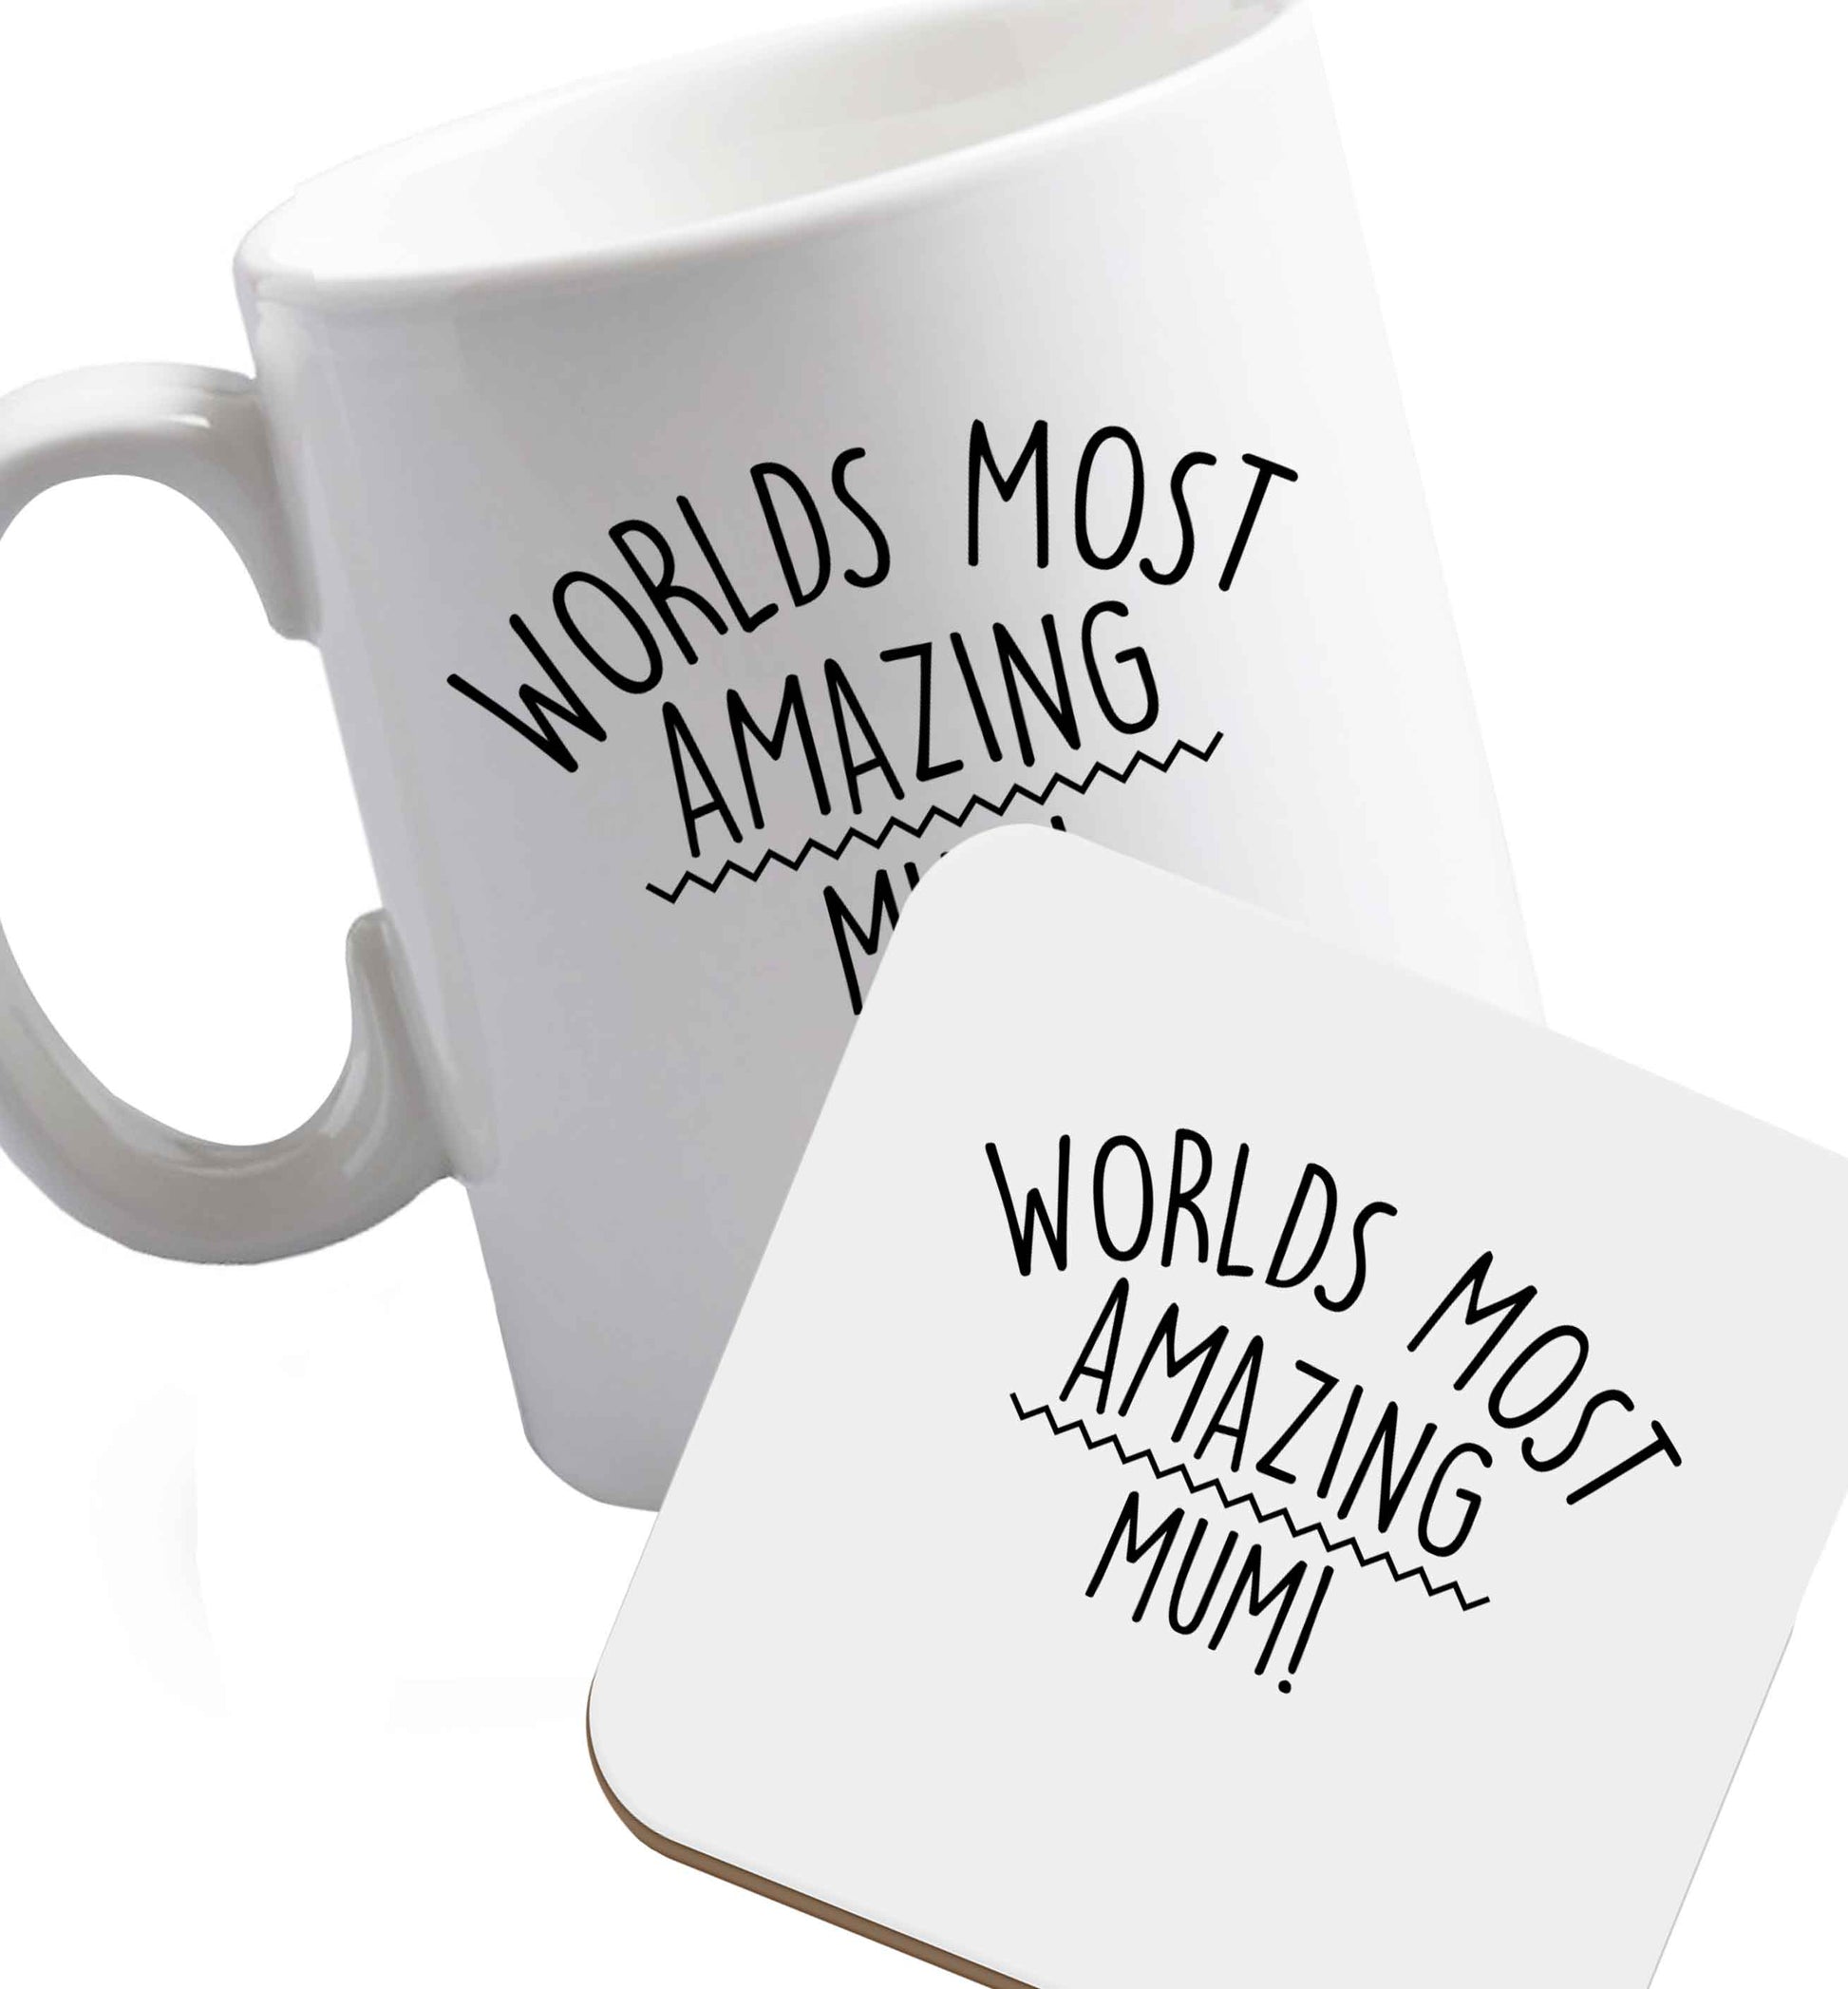 10 oz Worlds most amazing mum ceramic mug and coaster set right handed